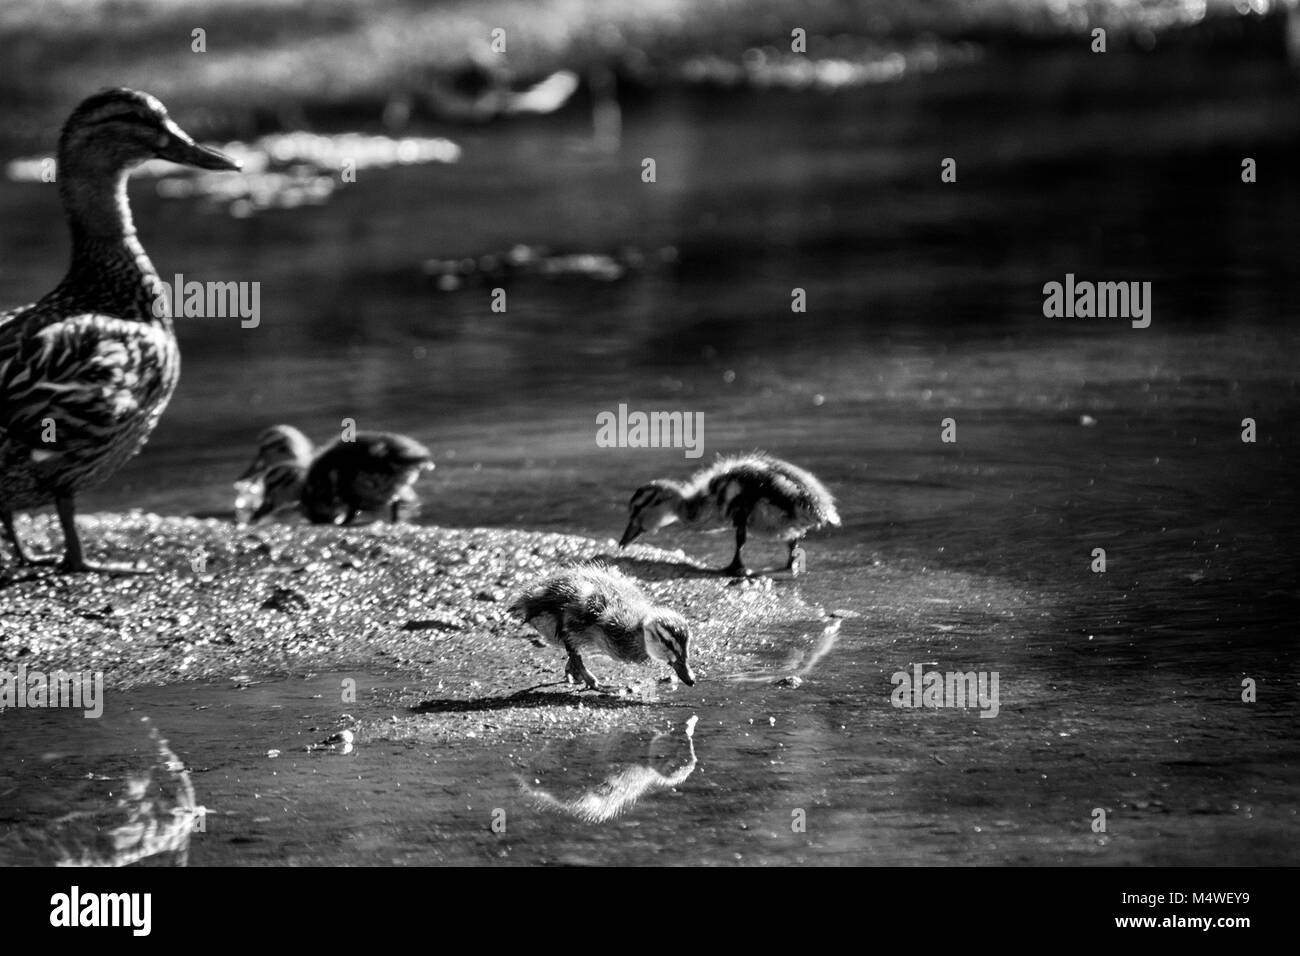 Baby entenküken Stockente (Anas platyrhynchos) auf der Bank von einem Teich tummeln, während die Mutter Ente über sie wacht Stockfoto